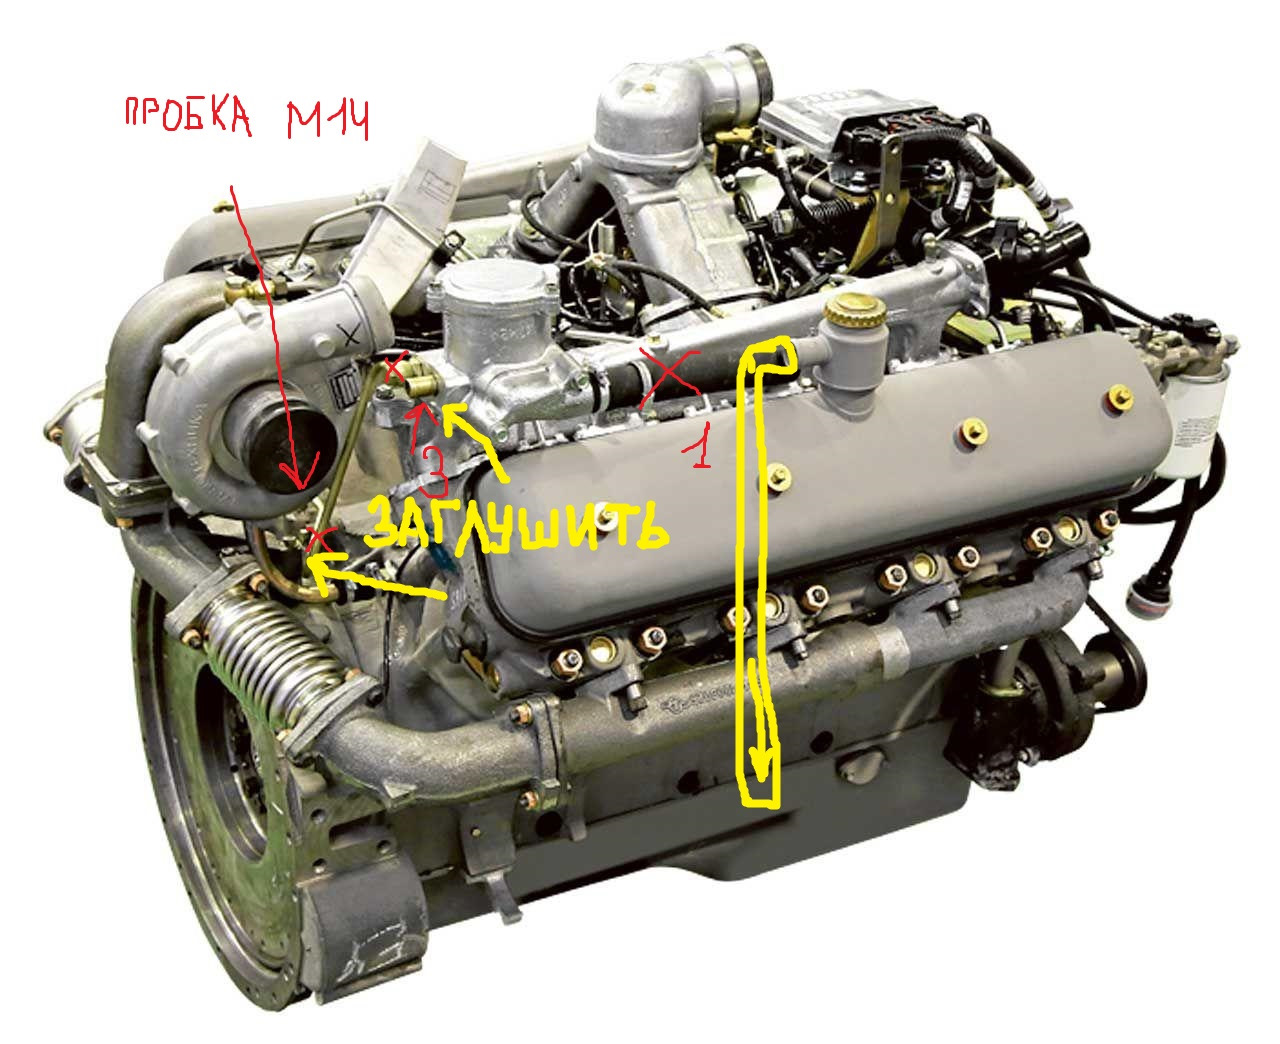 Ремонт двигателя 238. Модель двигателя ЯМЗ 238. Мотор ЯМЗ 6582. Двигатель ЯМЗ 236 евро 4. Двигатель ЯМЗ 6582.10.